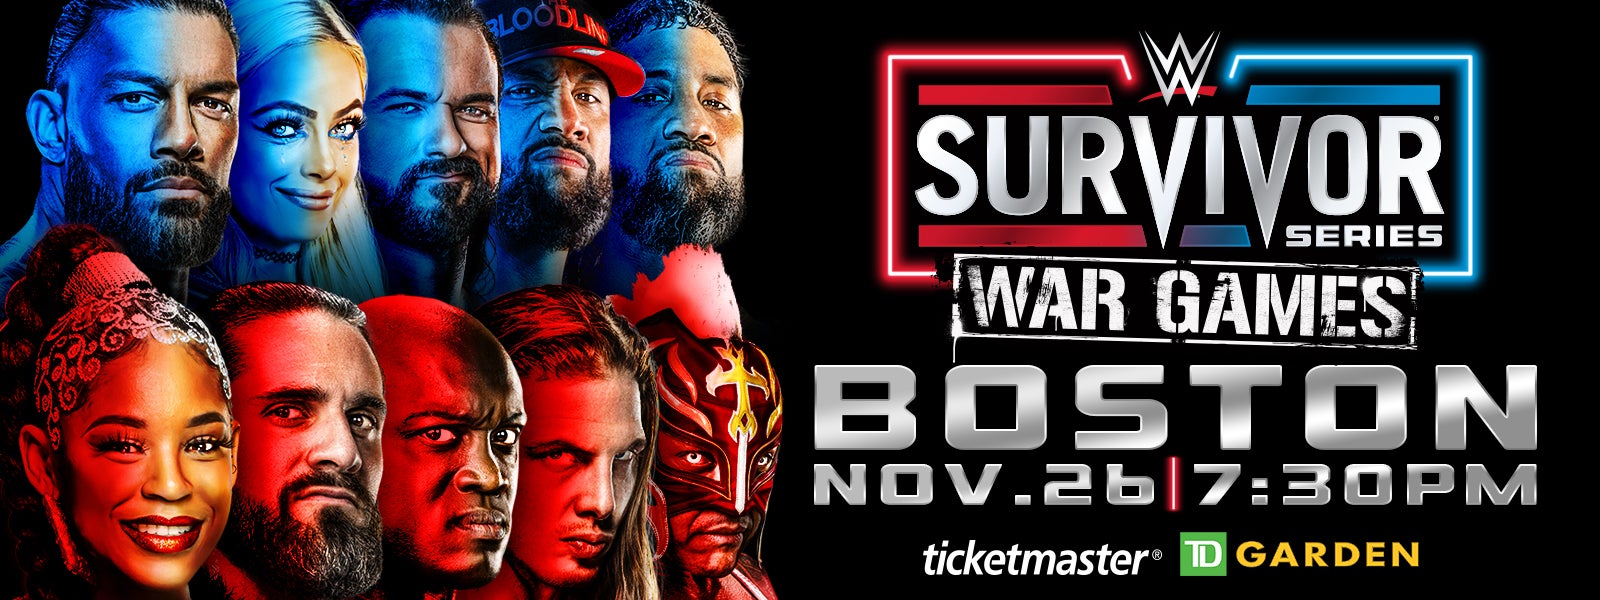 WWE Survivor Series WarGames 